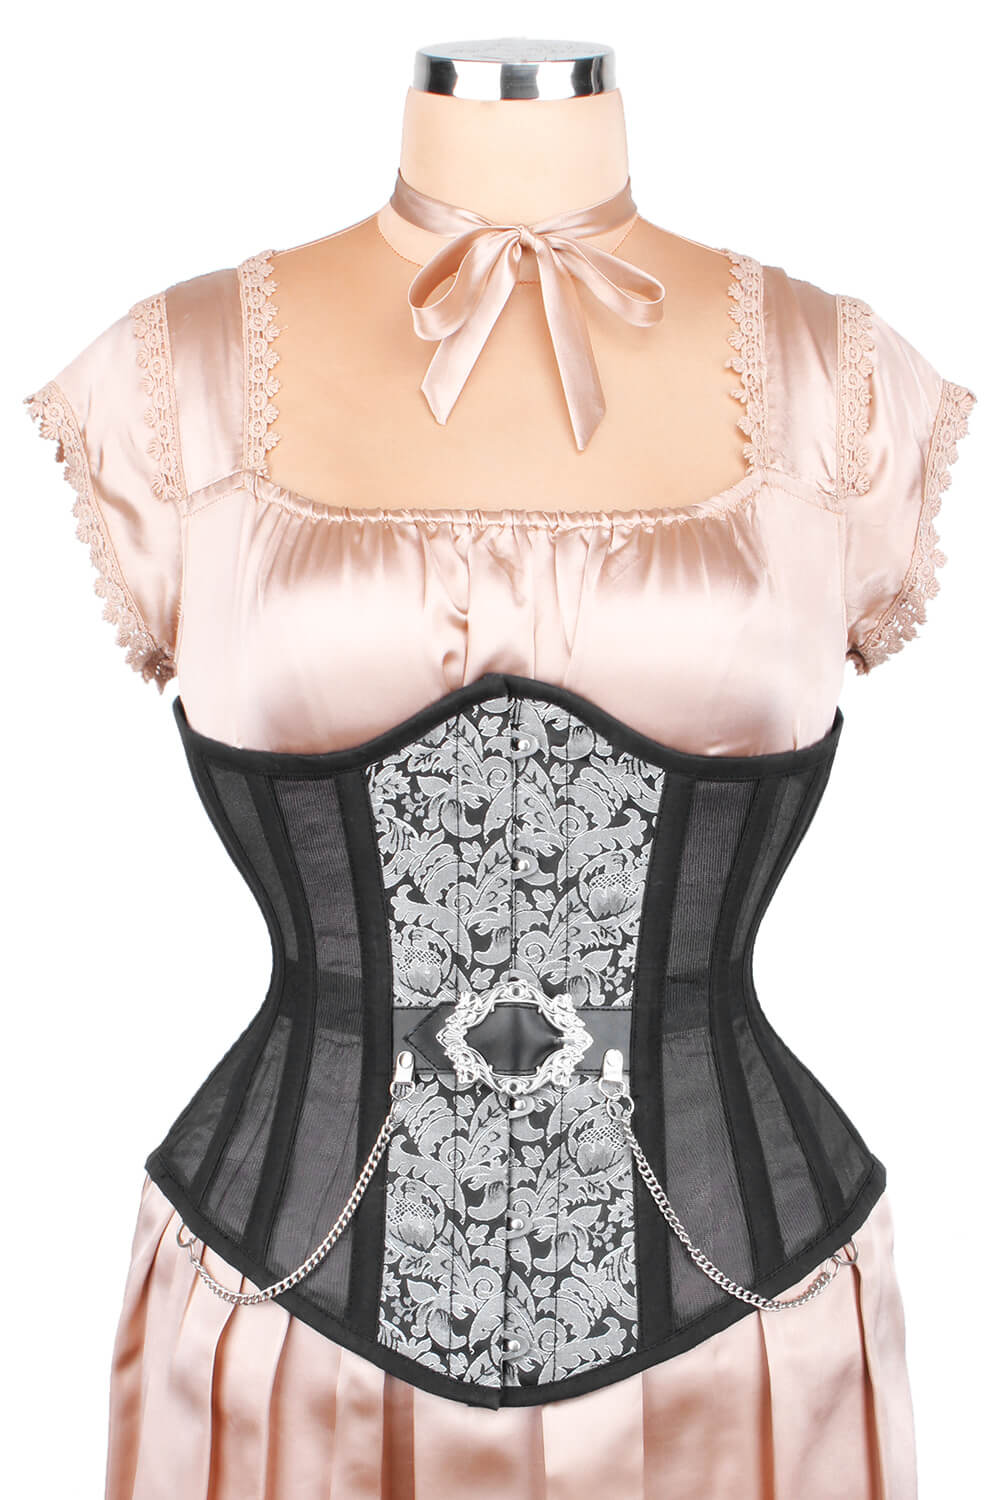 https://www.corsetdeal.com/cdn/shop/products/EL-204_F_Mesh_with_Brocade_Steel_Boned_Corset_ELC-601.jpg?v=1679055484